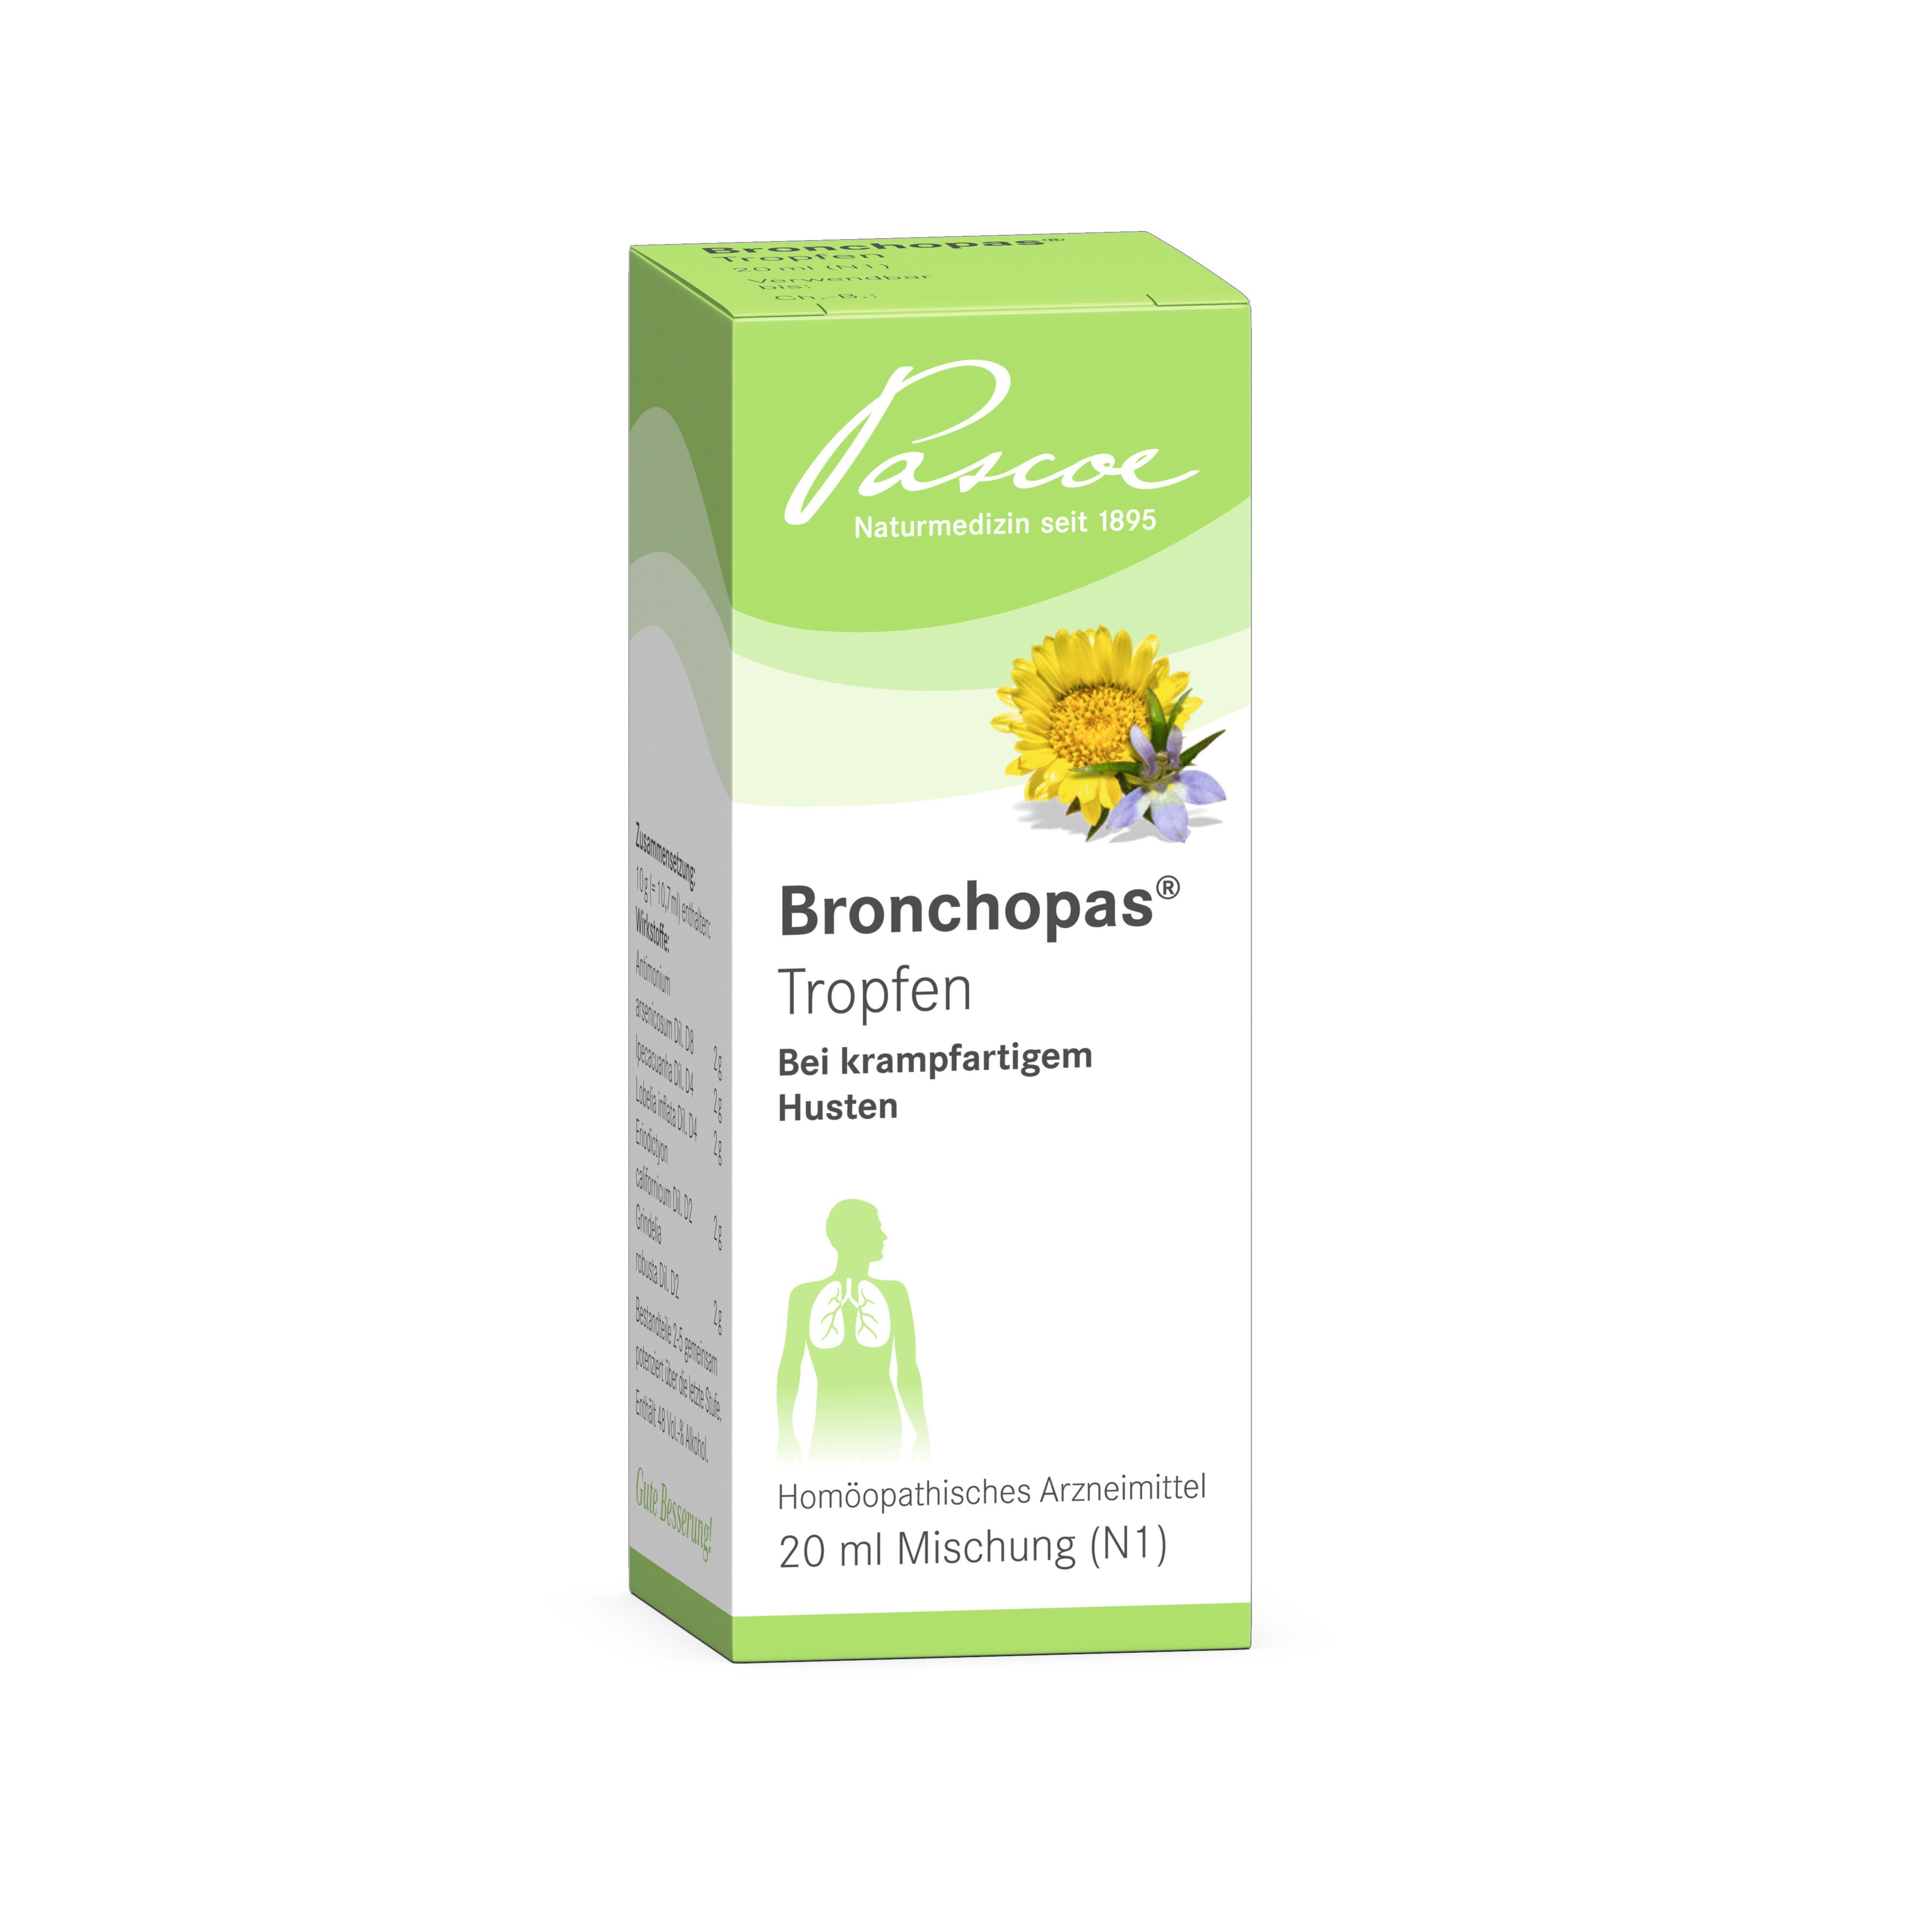 Bronchopas 20 ml Tropfen Packshot PZN 00985102